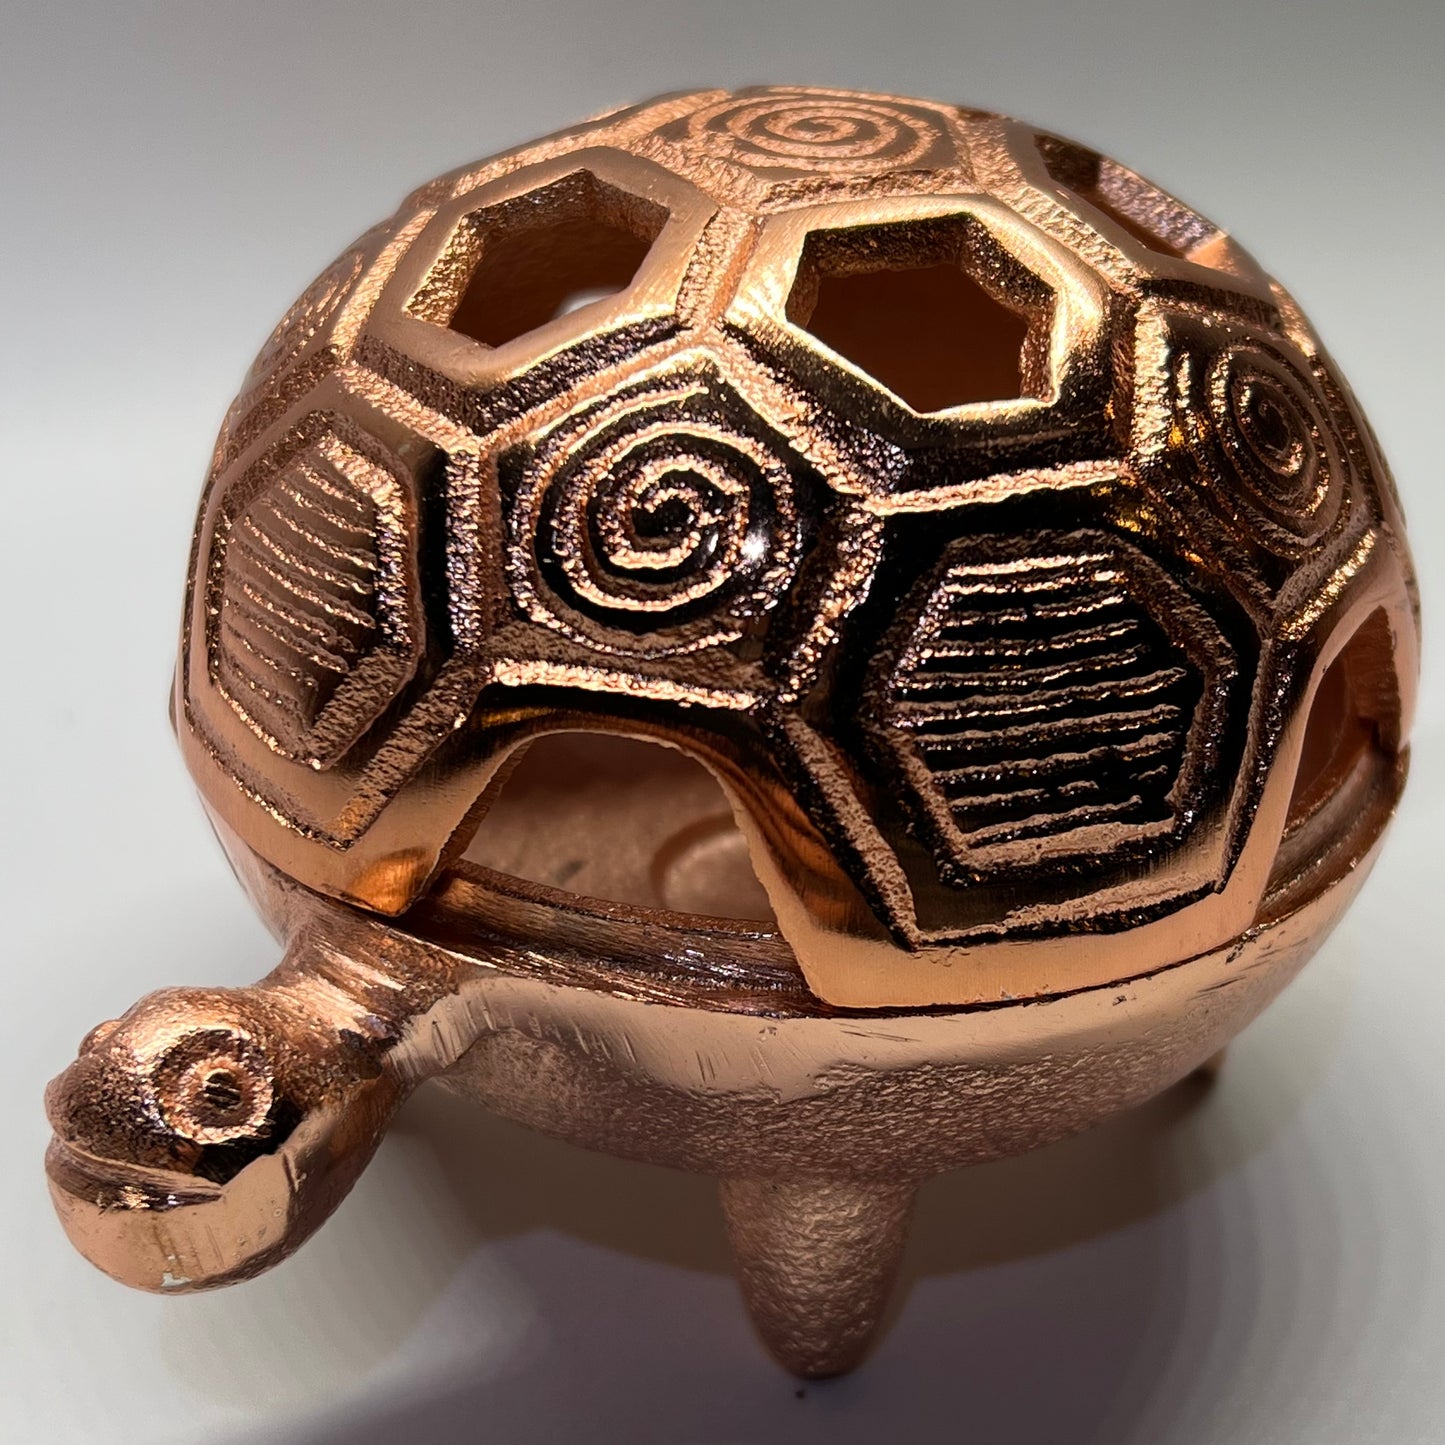 Antique Golden Turtle burner